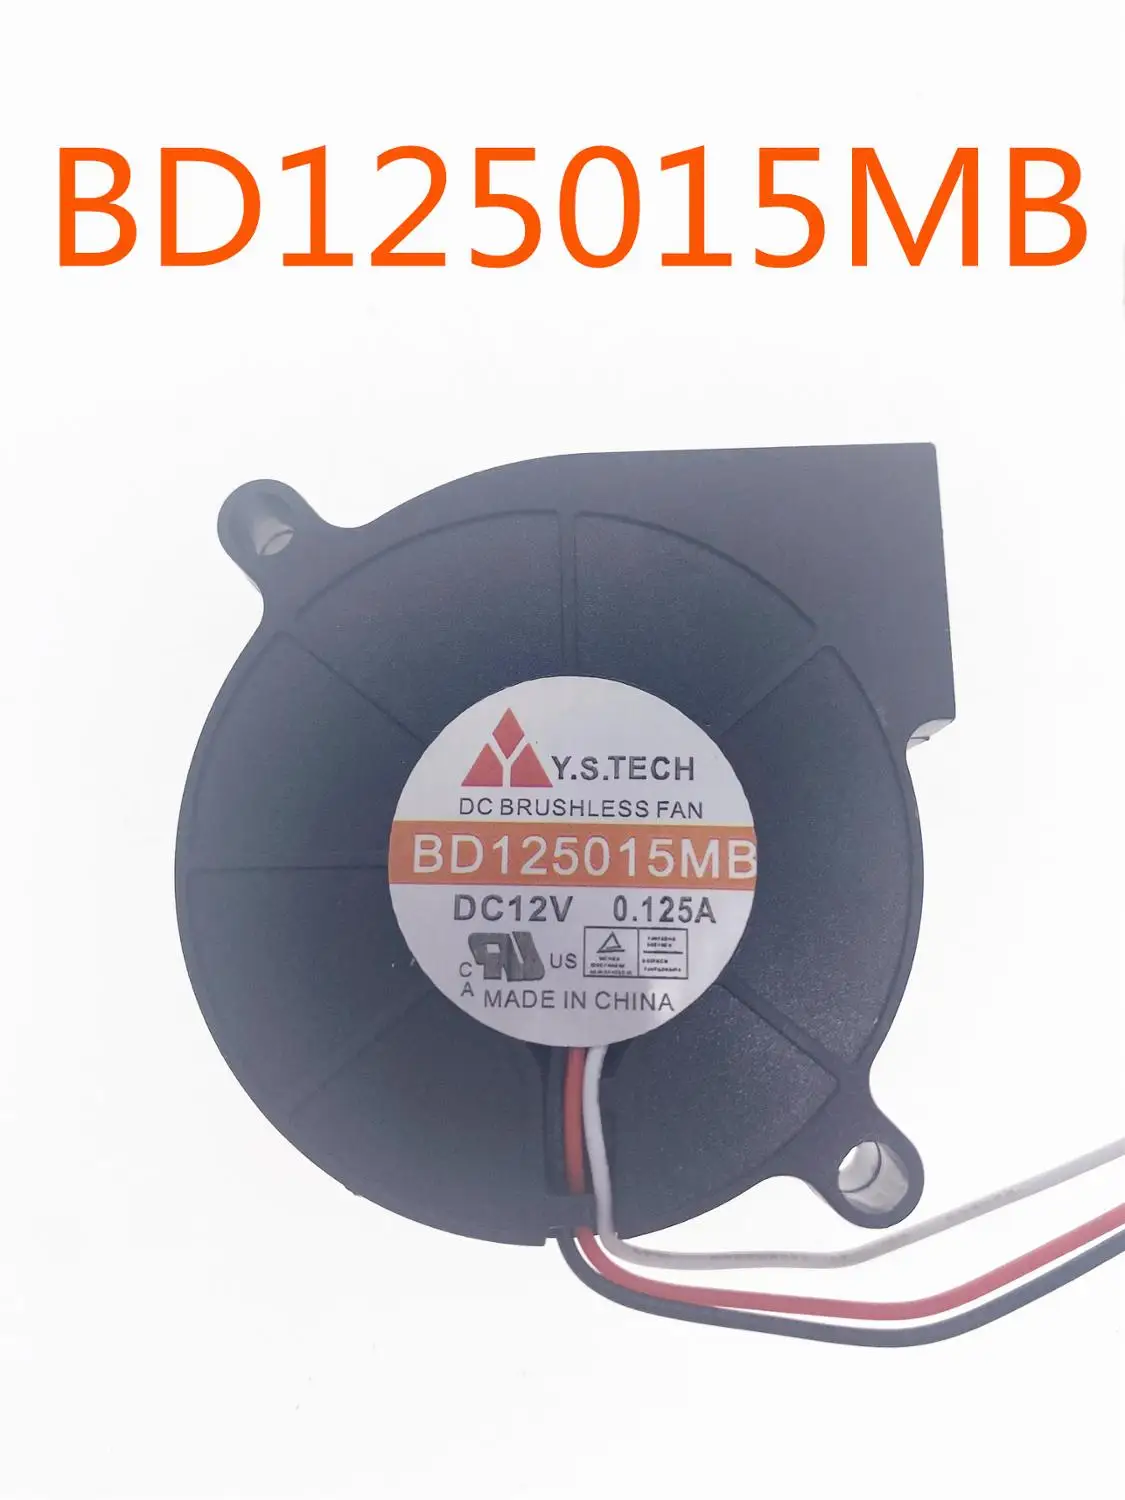 For Emacro For Y. S TECH BD125015MB DC 12V 0.125 EN 50x50x15mm 2-wire Server Fan Blæser